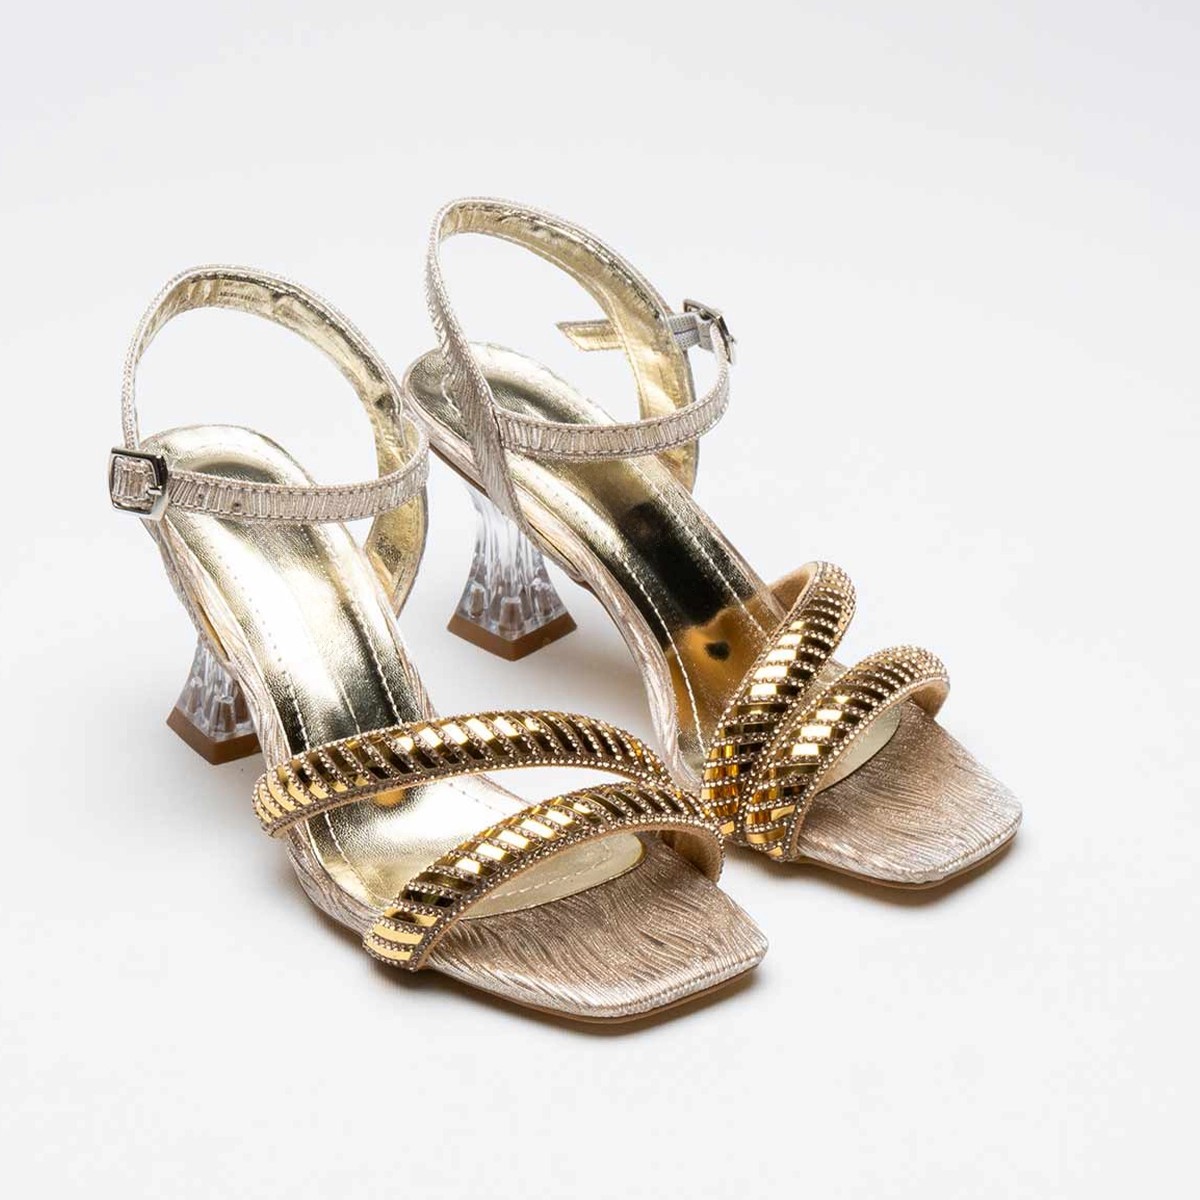 Tekstil Taşlı İnce Topuklu Ayakkabı - Gold